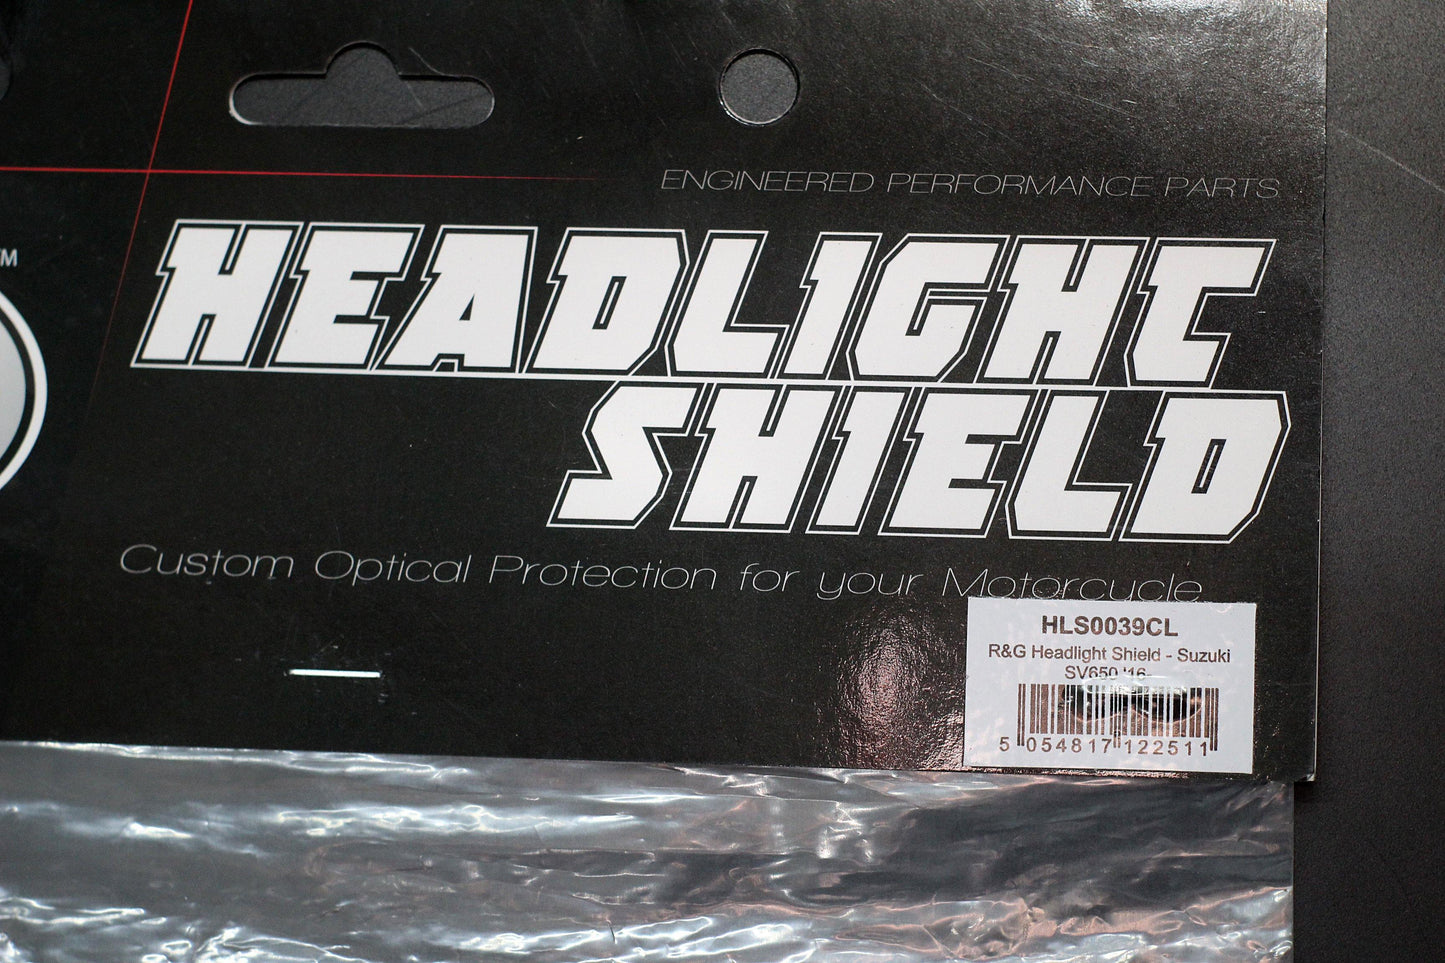 R&G Headlight Shield fits for Suzuki SV650 ('16-) / SV650X ('18-) - Durian Bikers